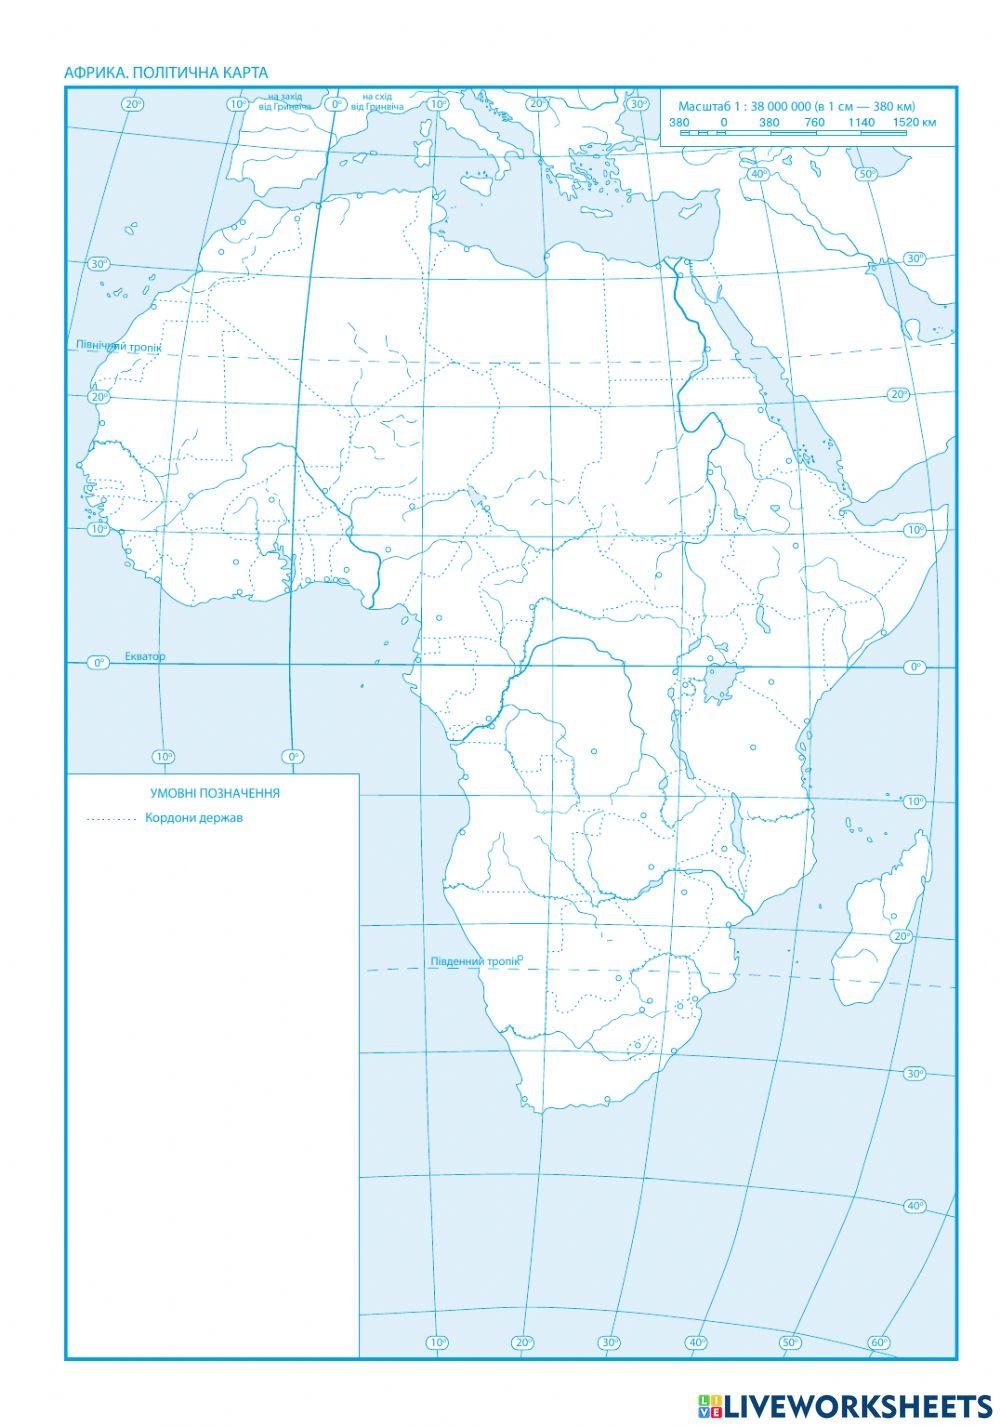 Практична робота № 3 (початок)  Позначення на контурній карті об’єктів берегової лінії та рельєфуАфрики